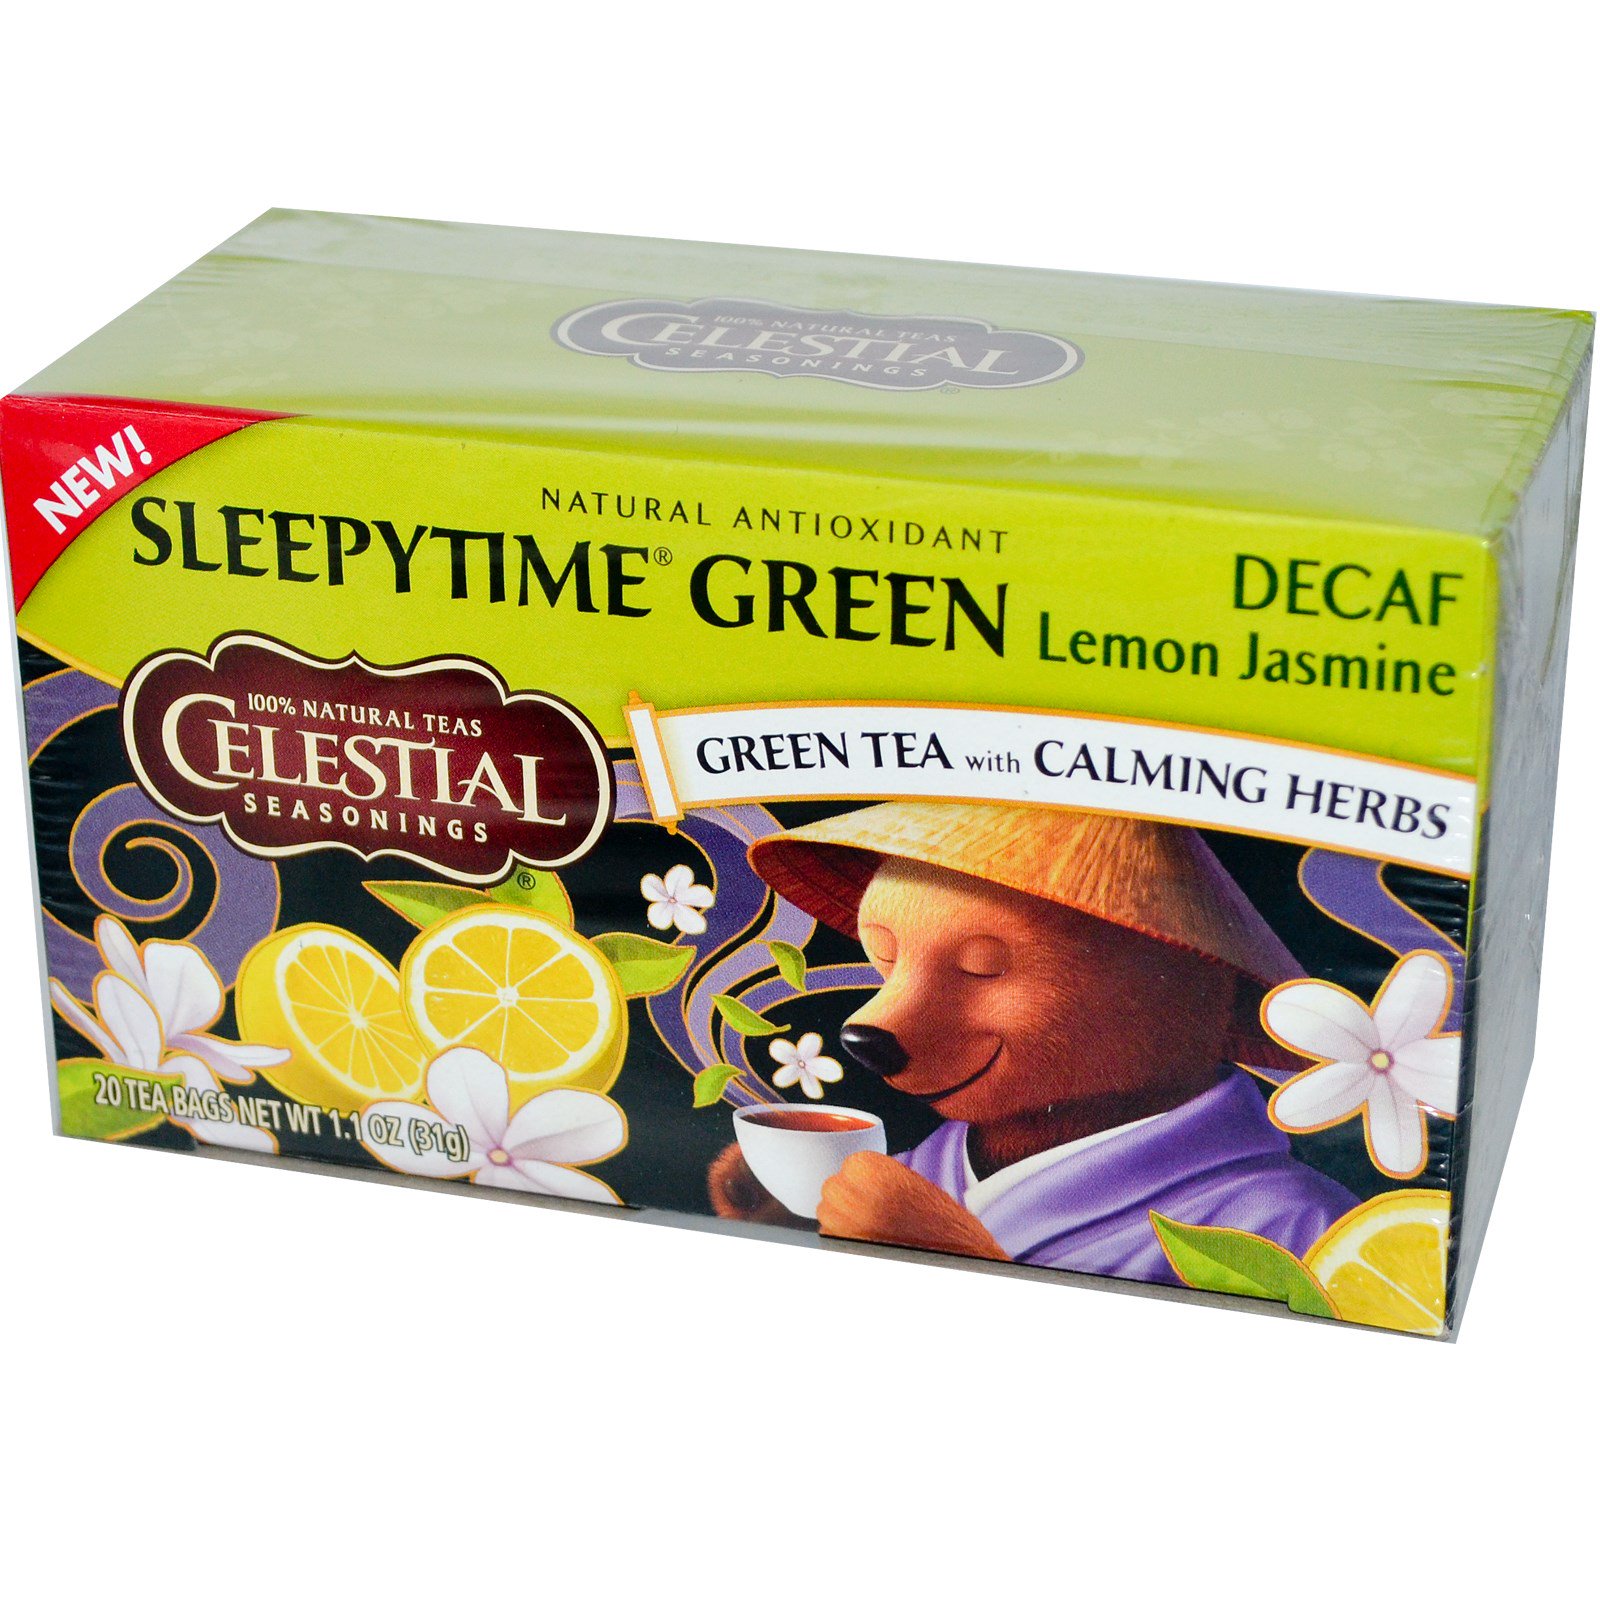 benefits of celestial sleepytime tea